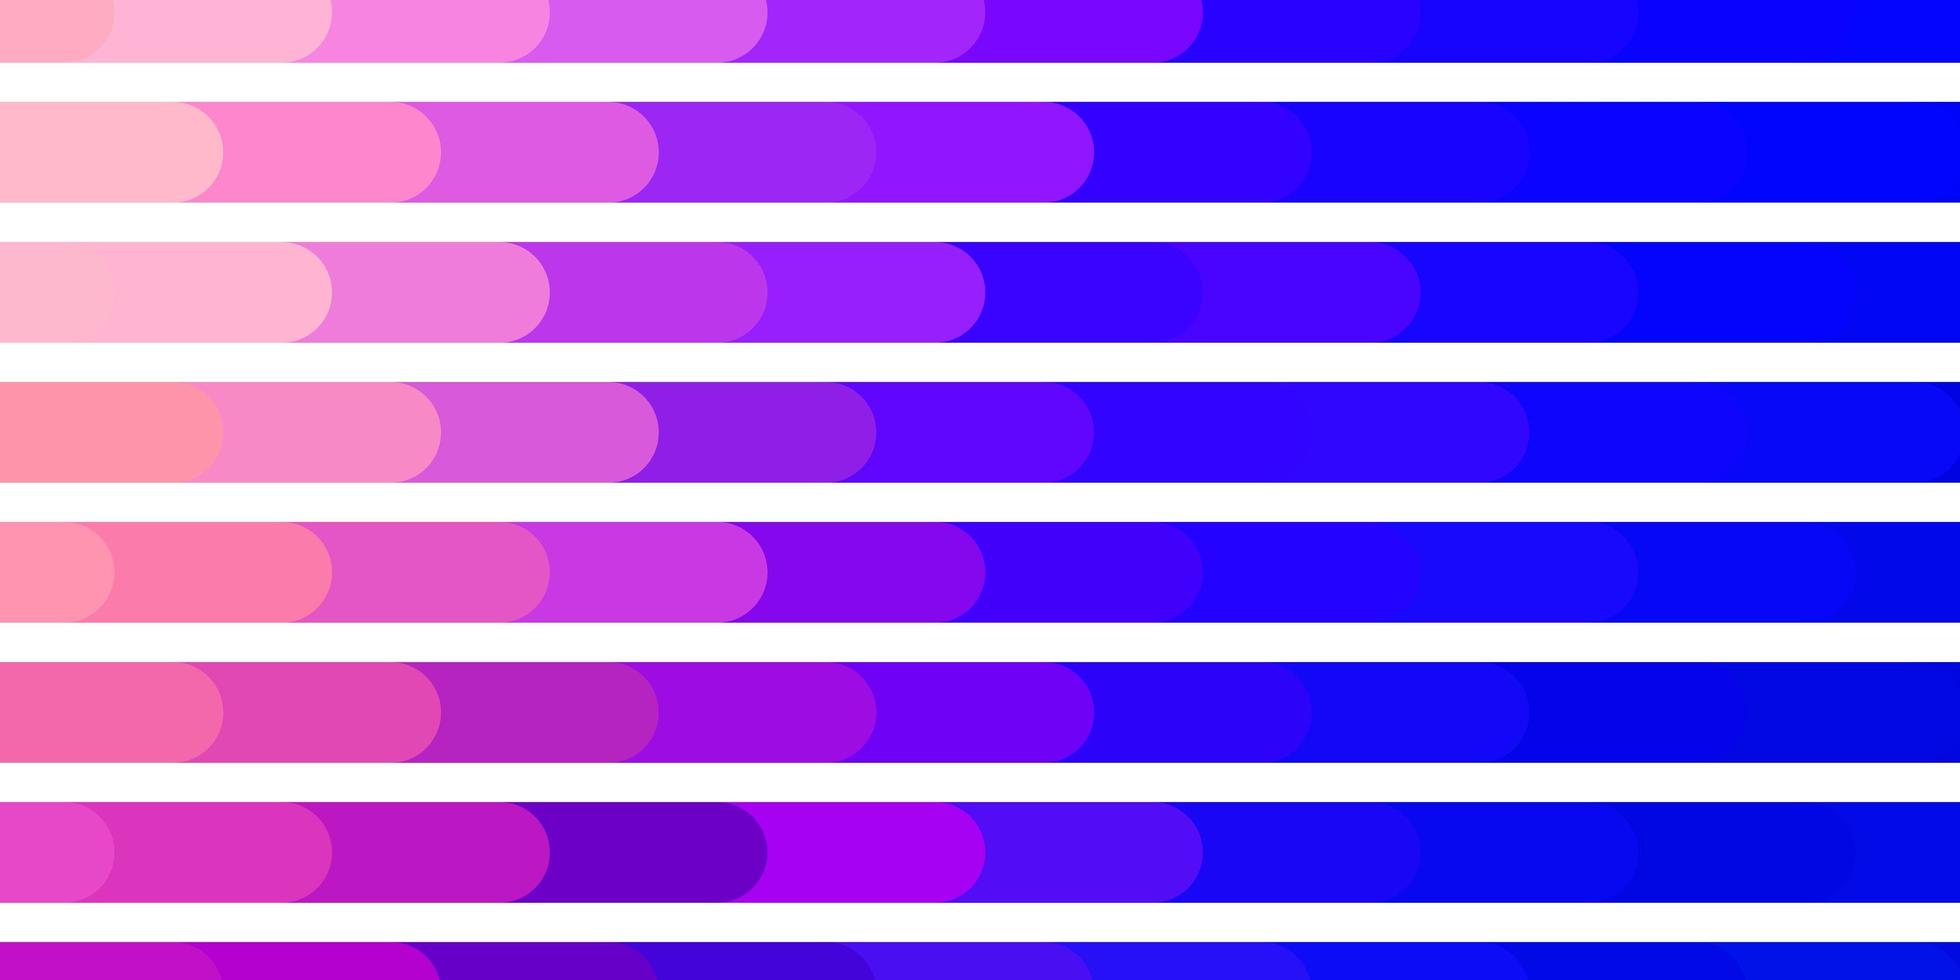 Hellblau-gelber Vektorhintergrund mit Linienverlaufsillustration mit geraden Linien im abstrakten Stilmuster für Werbespots vektor